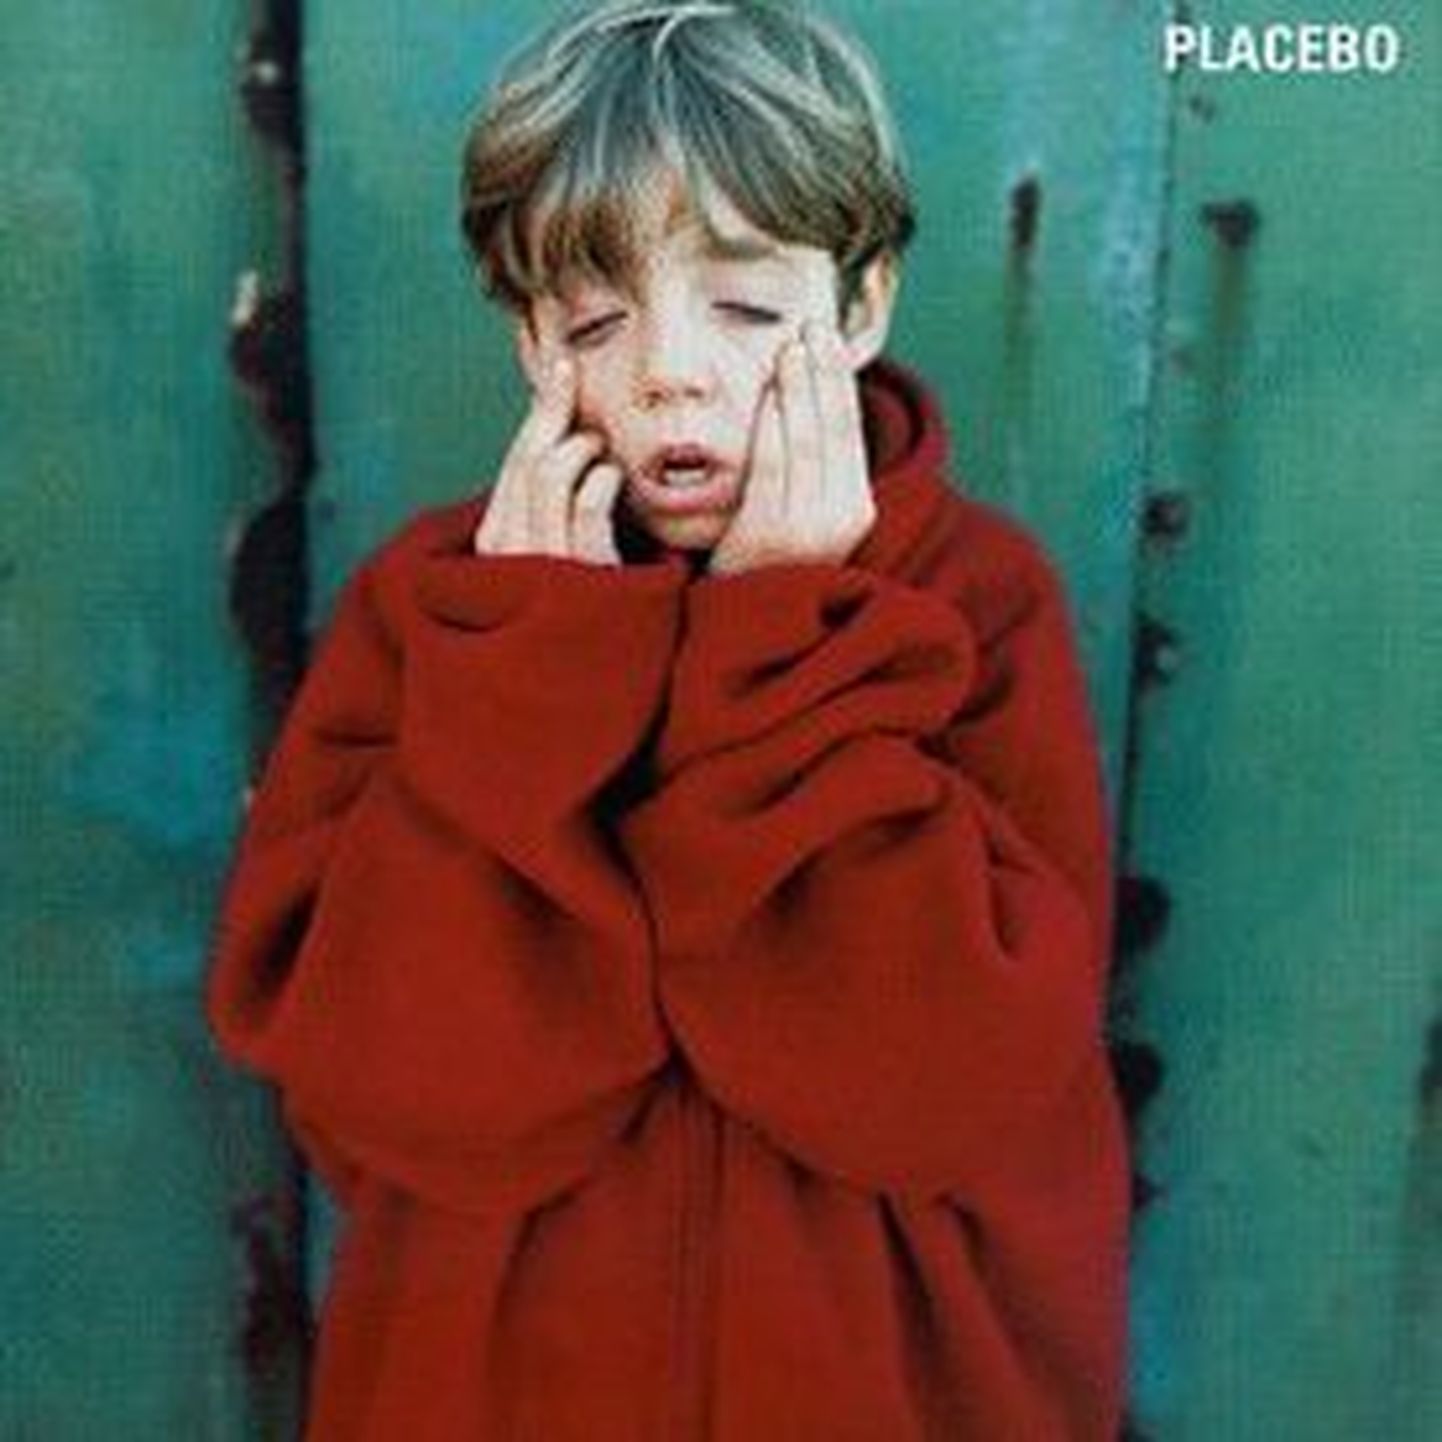 Обложка альбома группы Placebo.